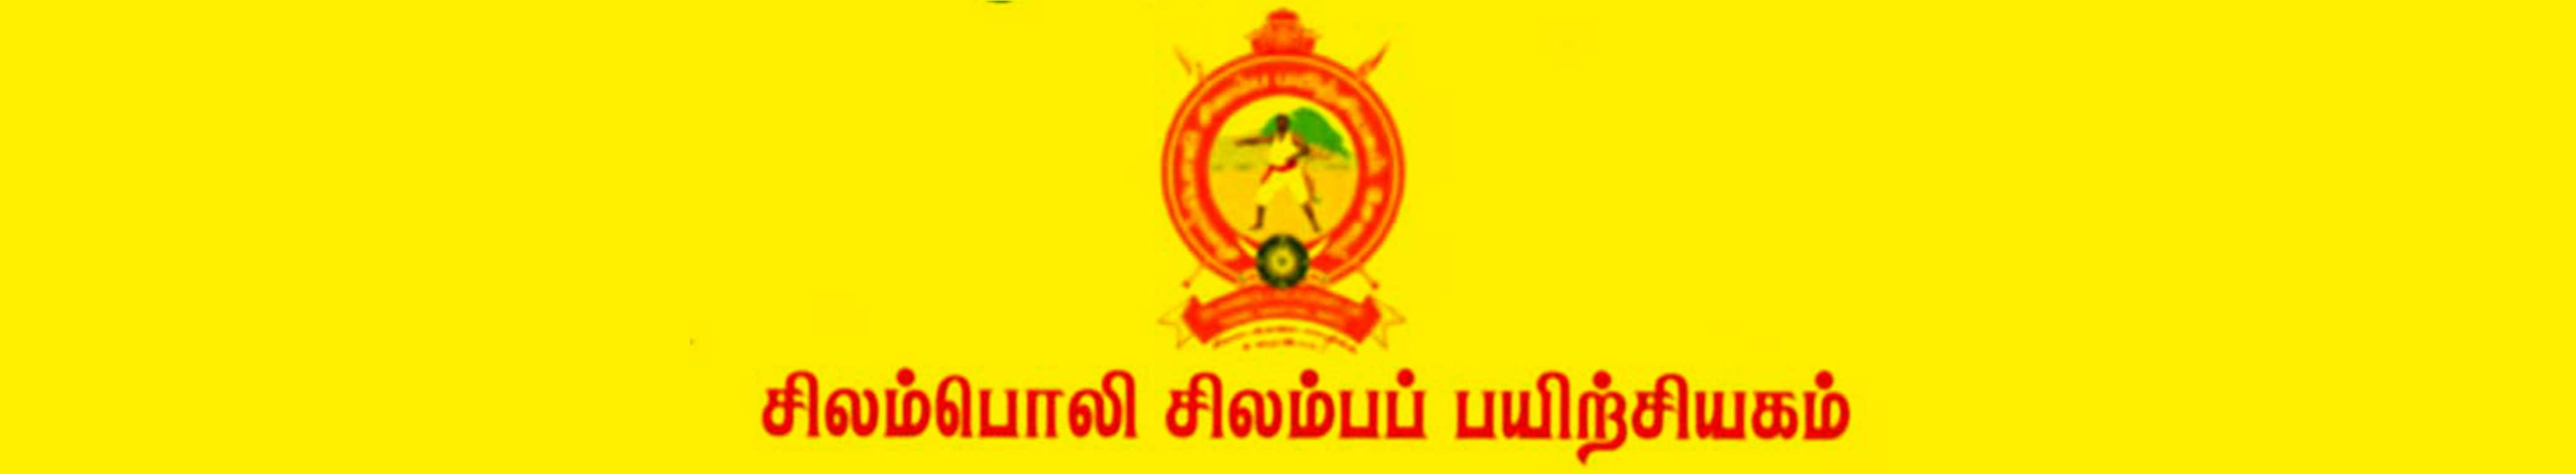 Silamboli Silambam Pairchiyagam Banner Image